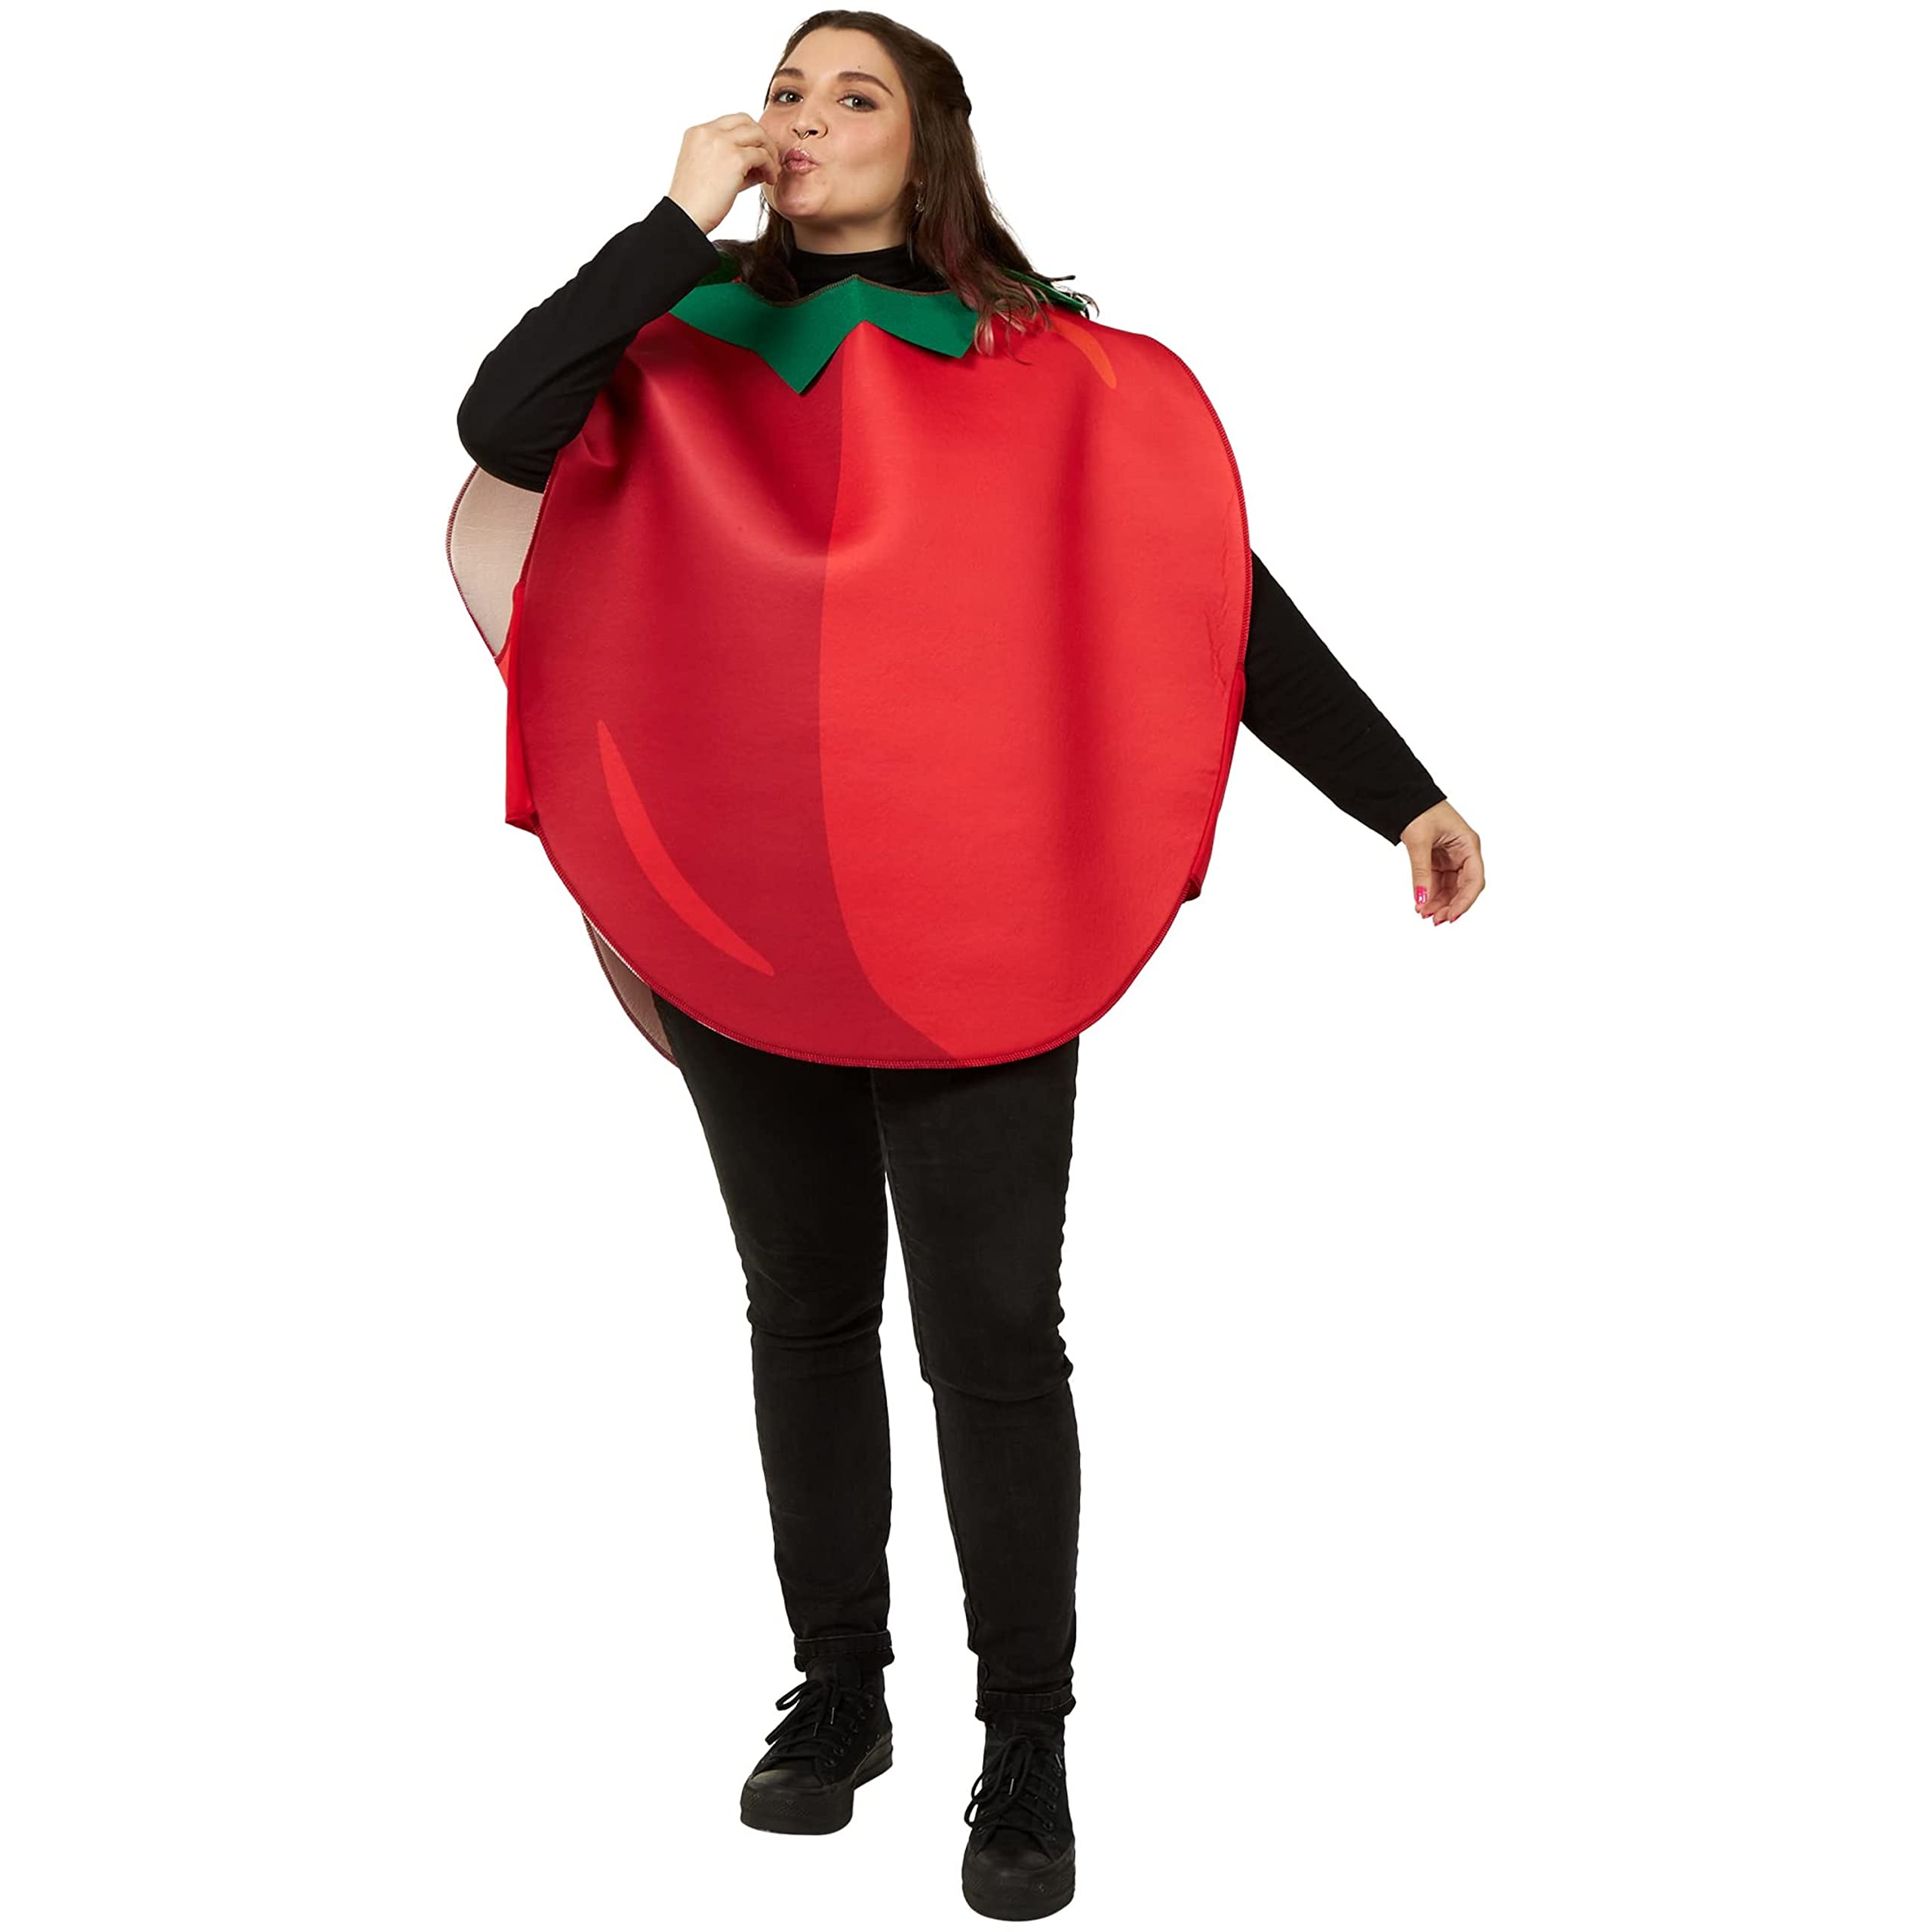 Red Tomato - Unisex Halloween Costume